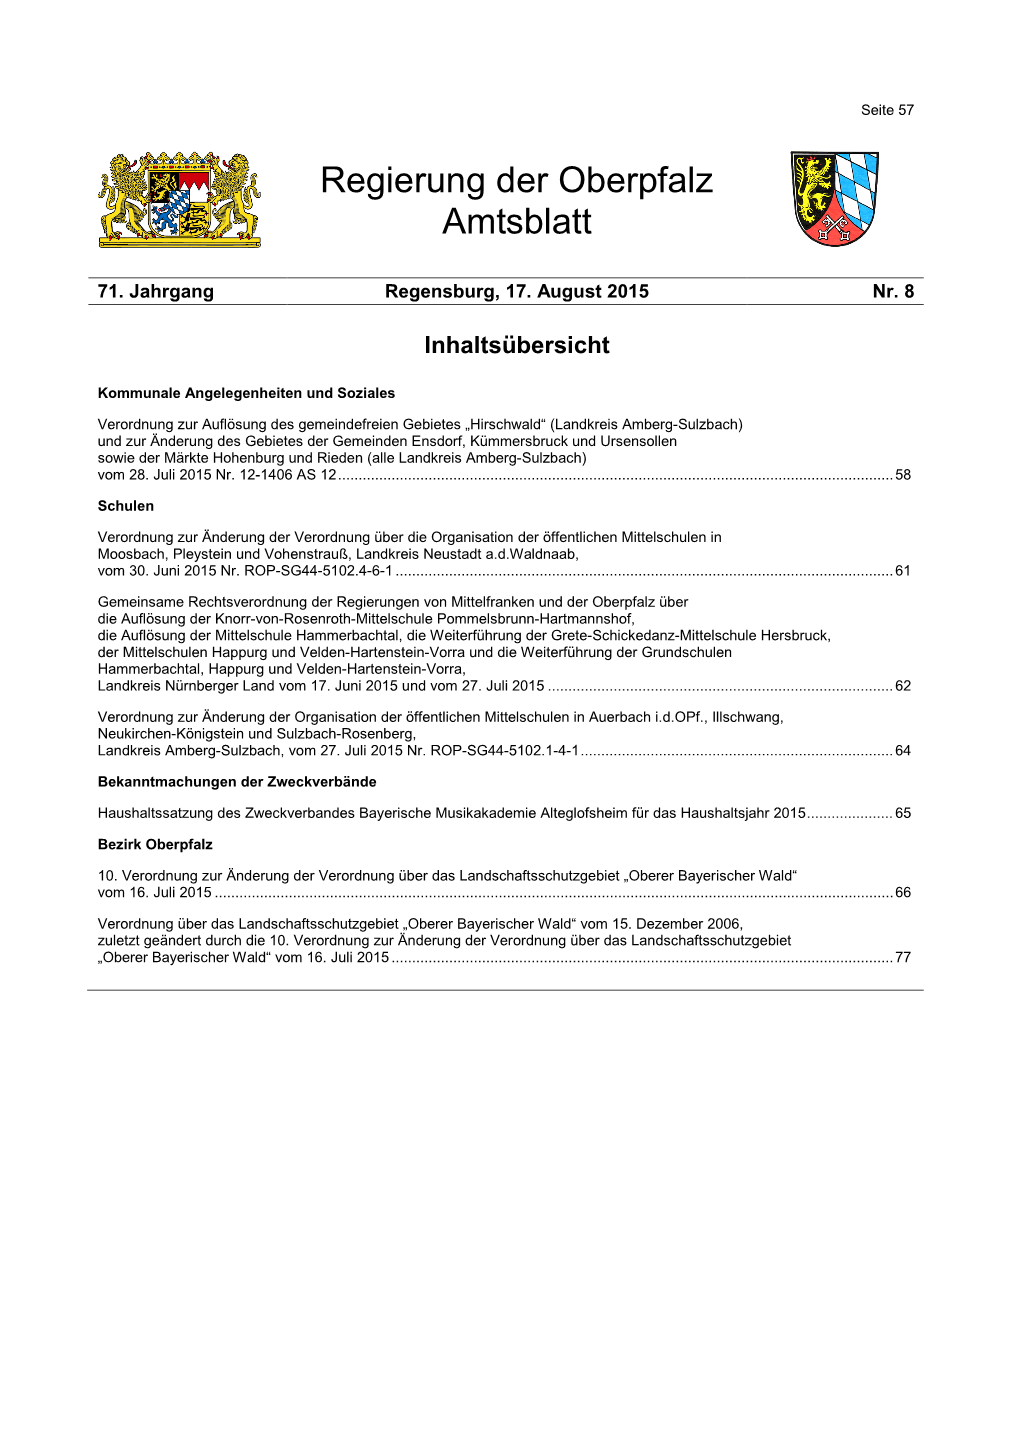 Amtsblatt Der Regierung Der Oberpfalz Nr. 8/2015